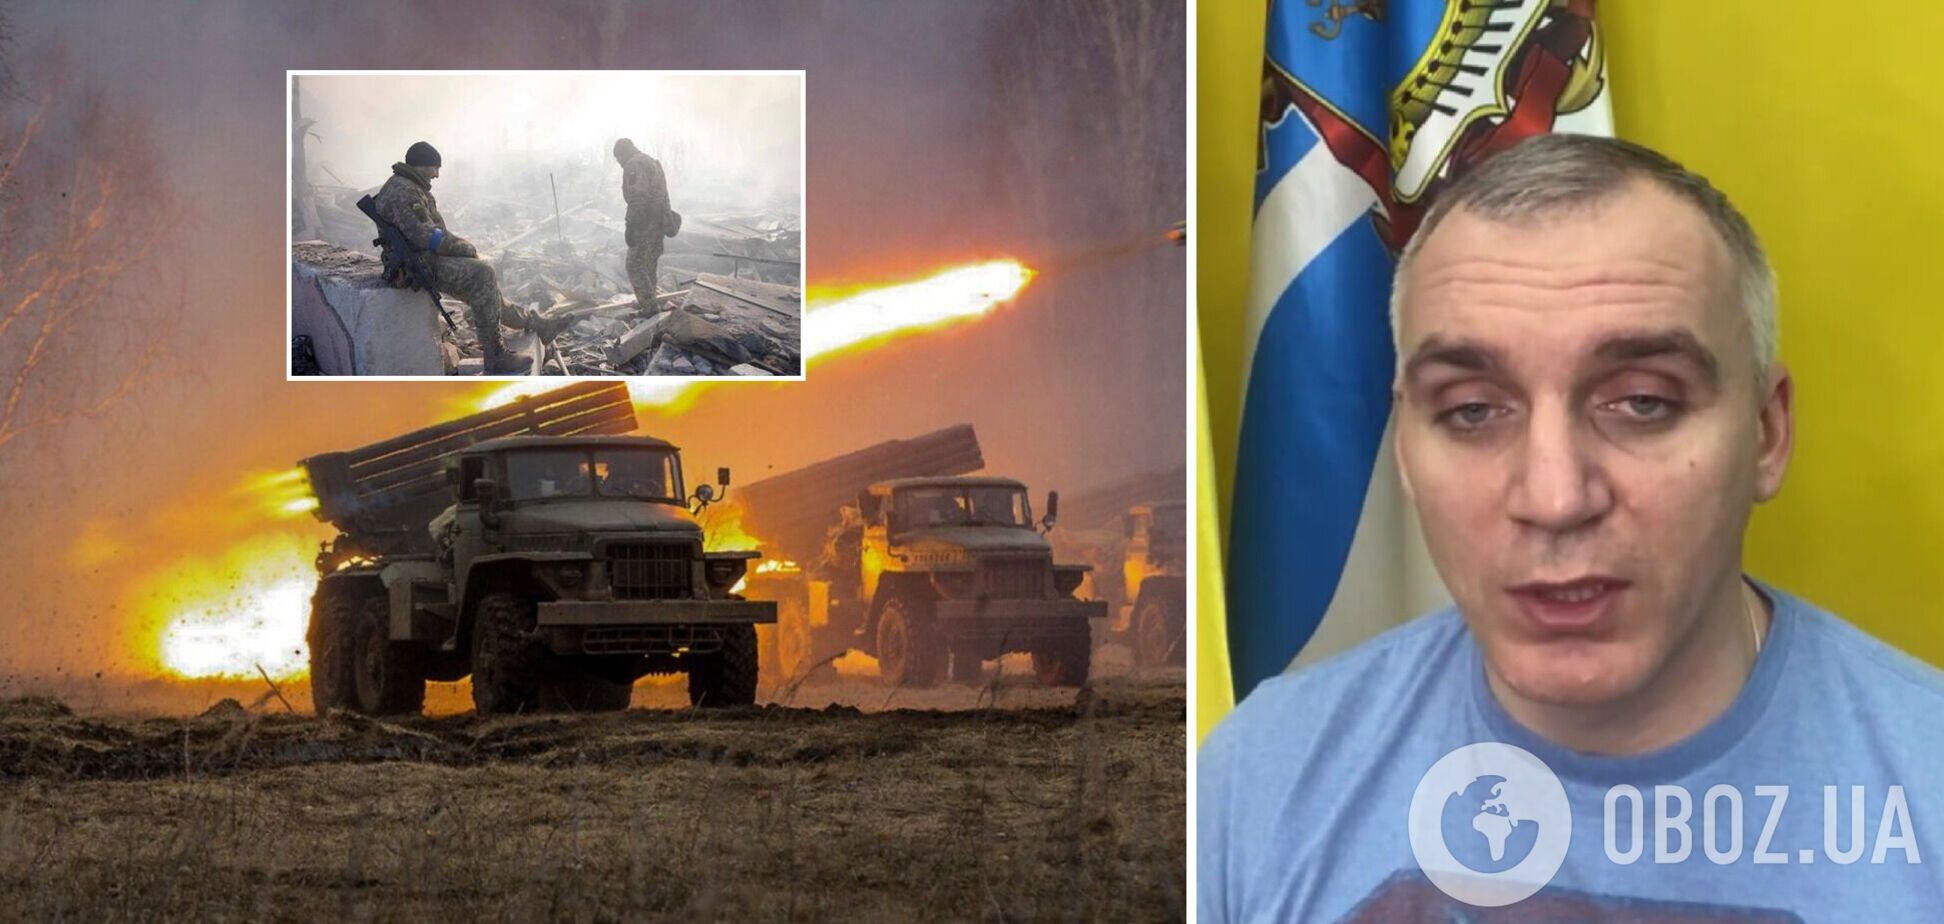 Николаев подвергся ракетному удару оккупантов с Херсонской области: мэр Сенкевич рассказал о ситуации в городе. Видео